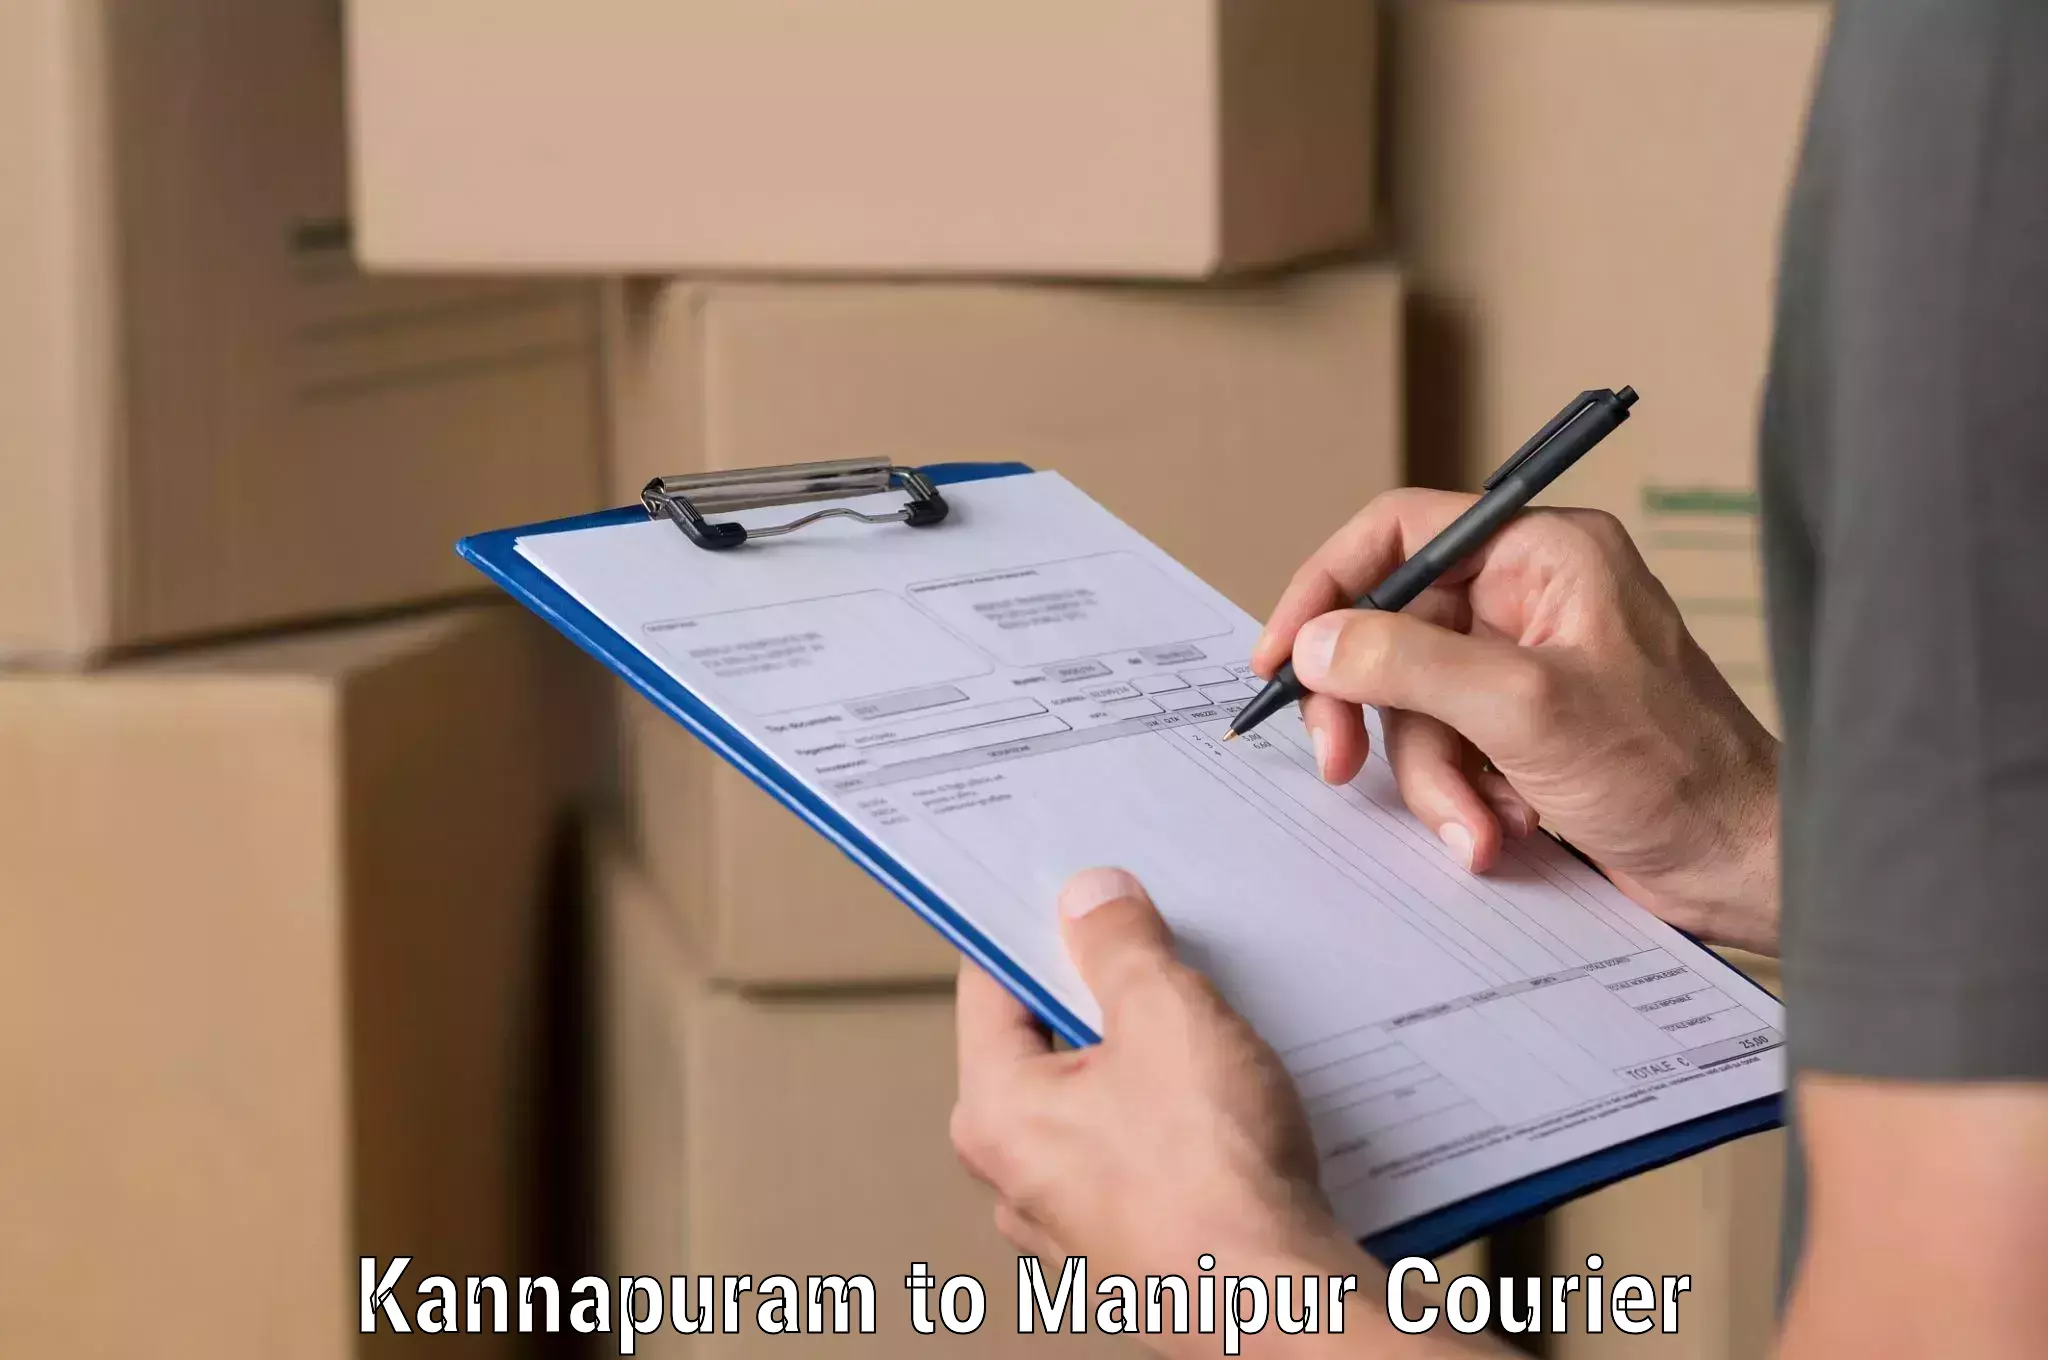 Supply chain efficiency in Kannapuram to Kakching